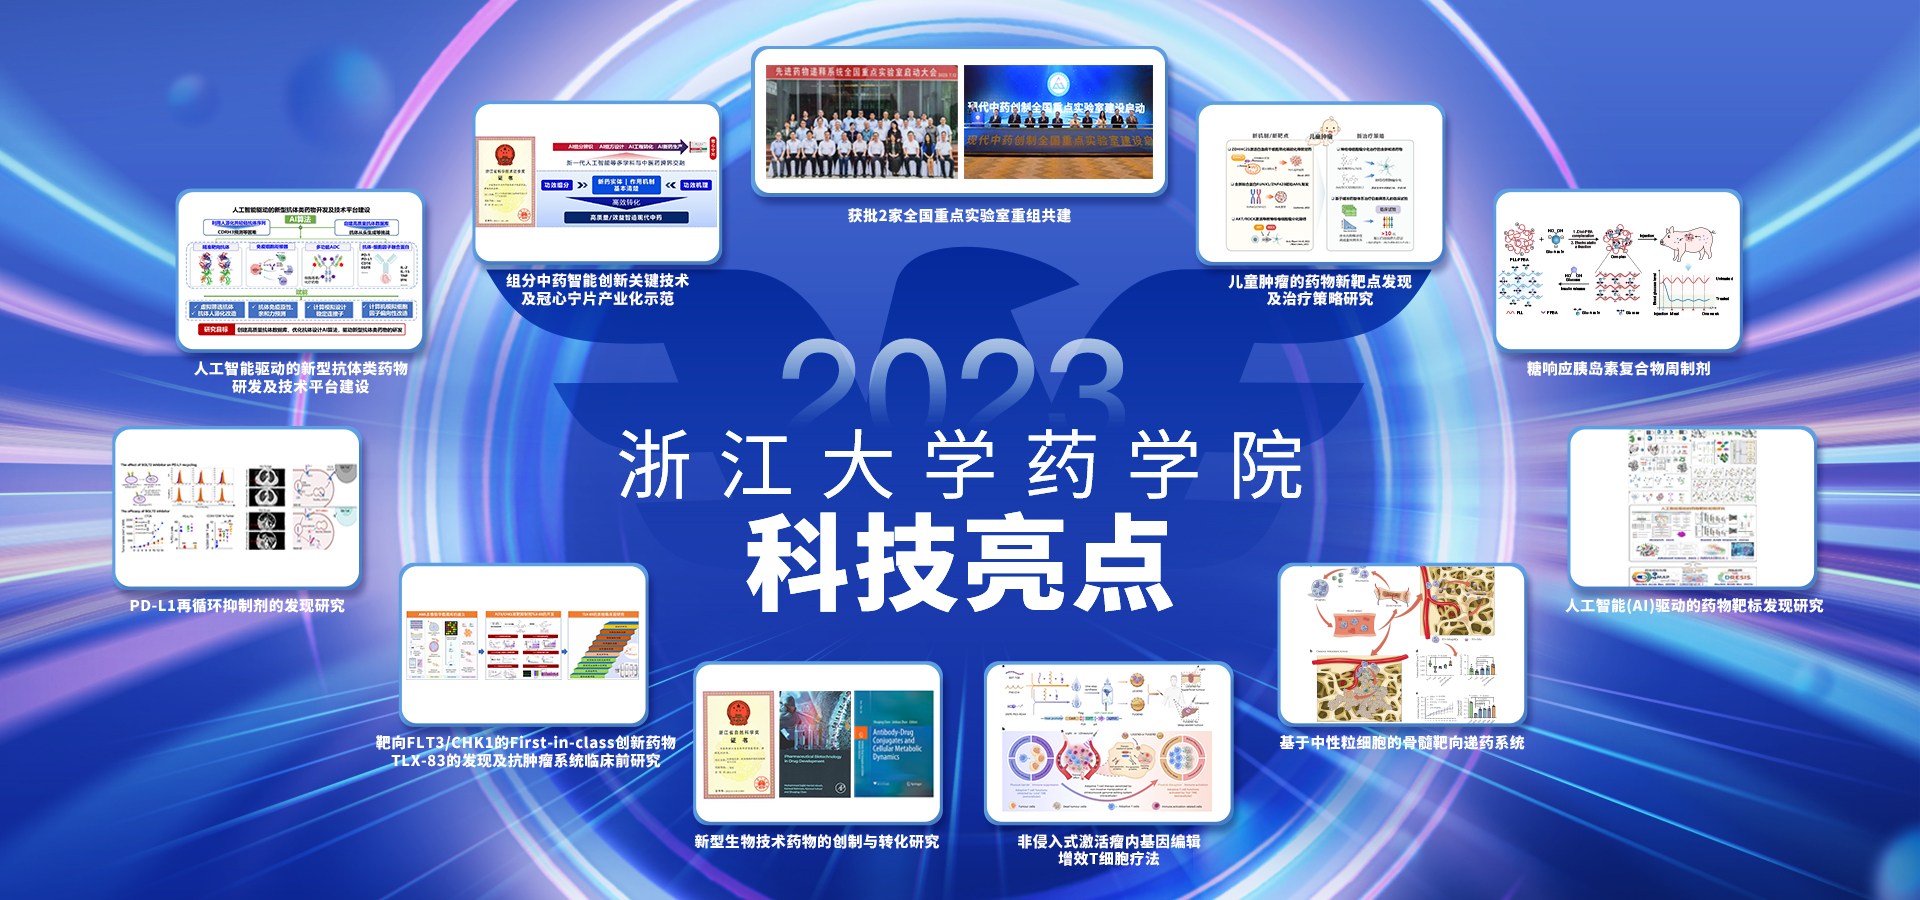 浙江大学药学院2023年科技亮点